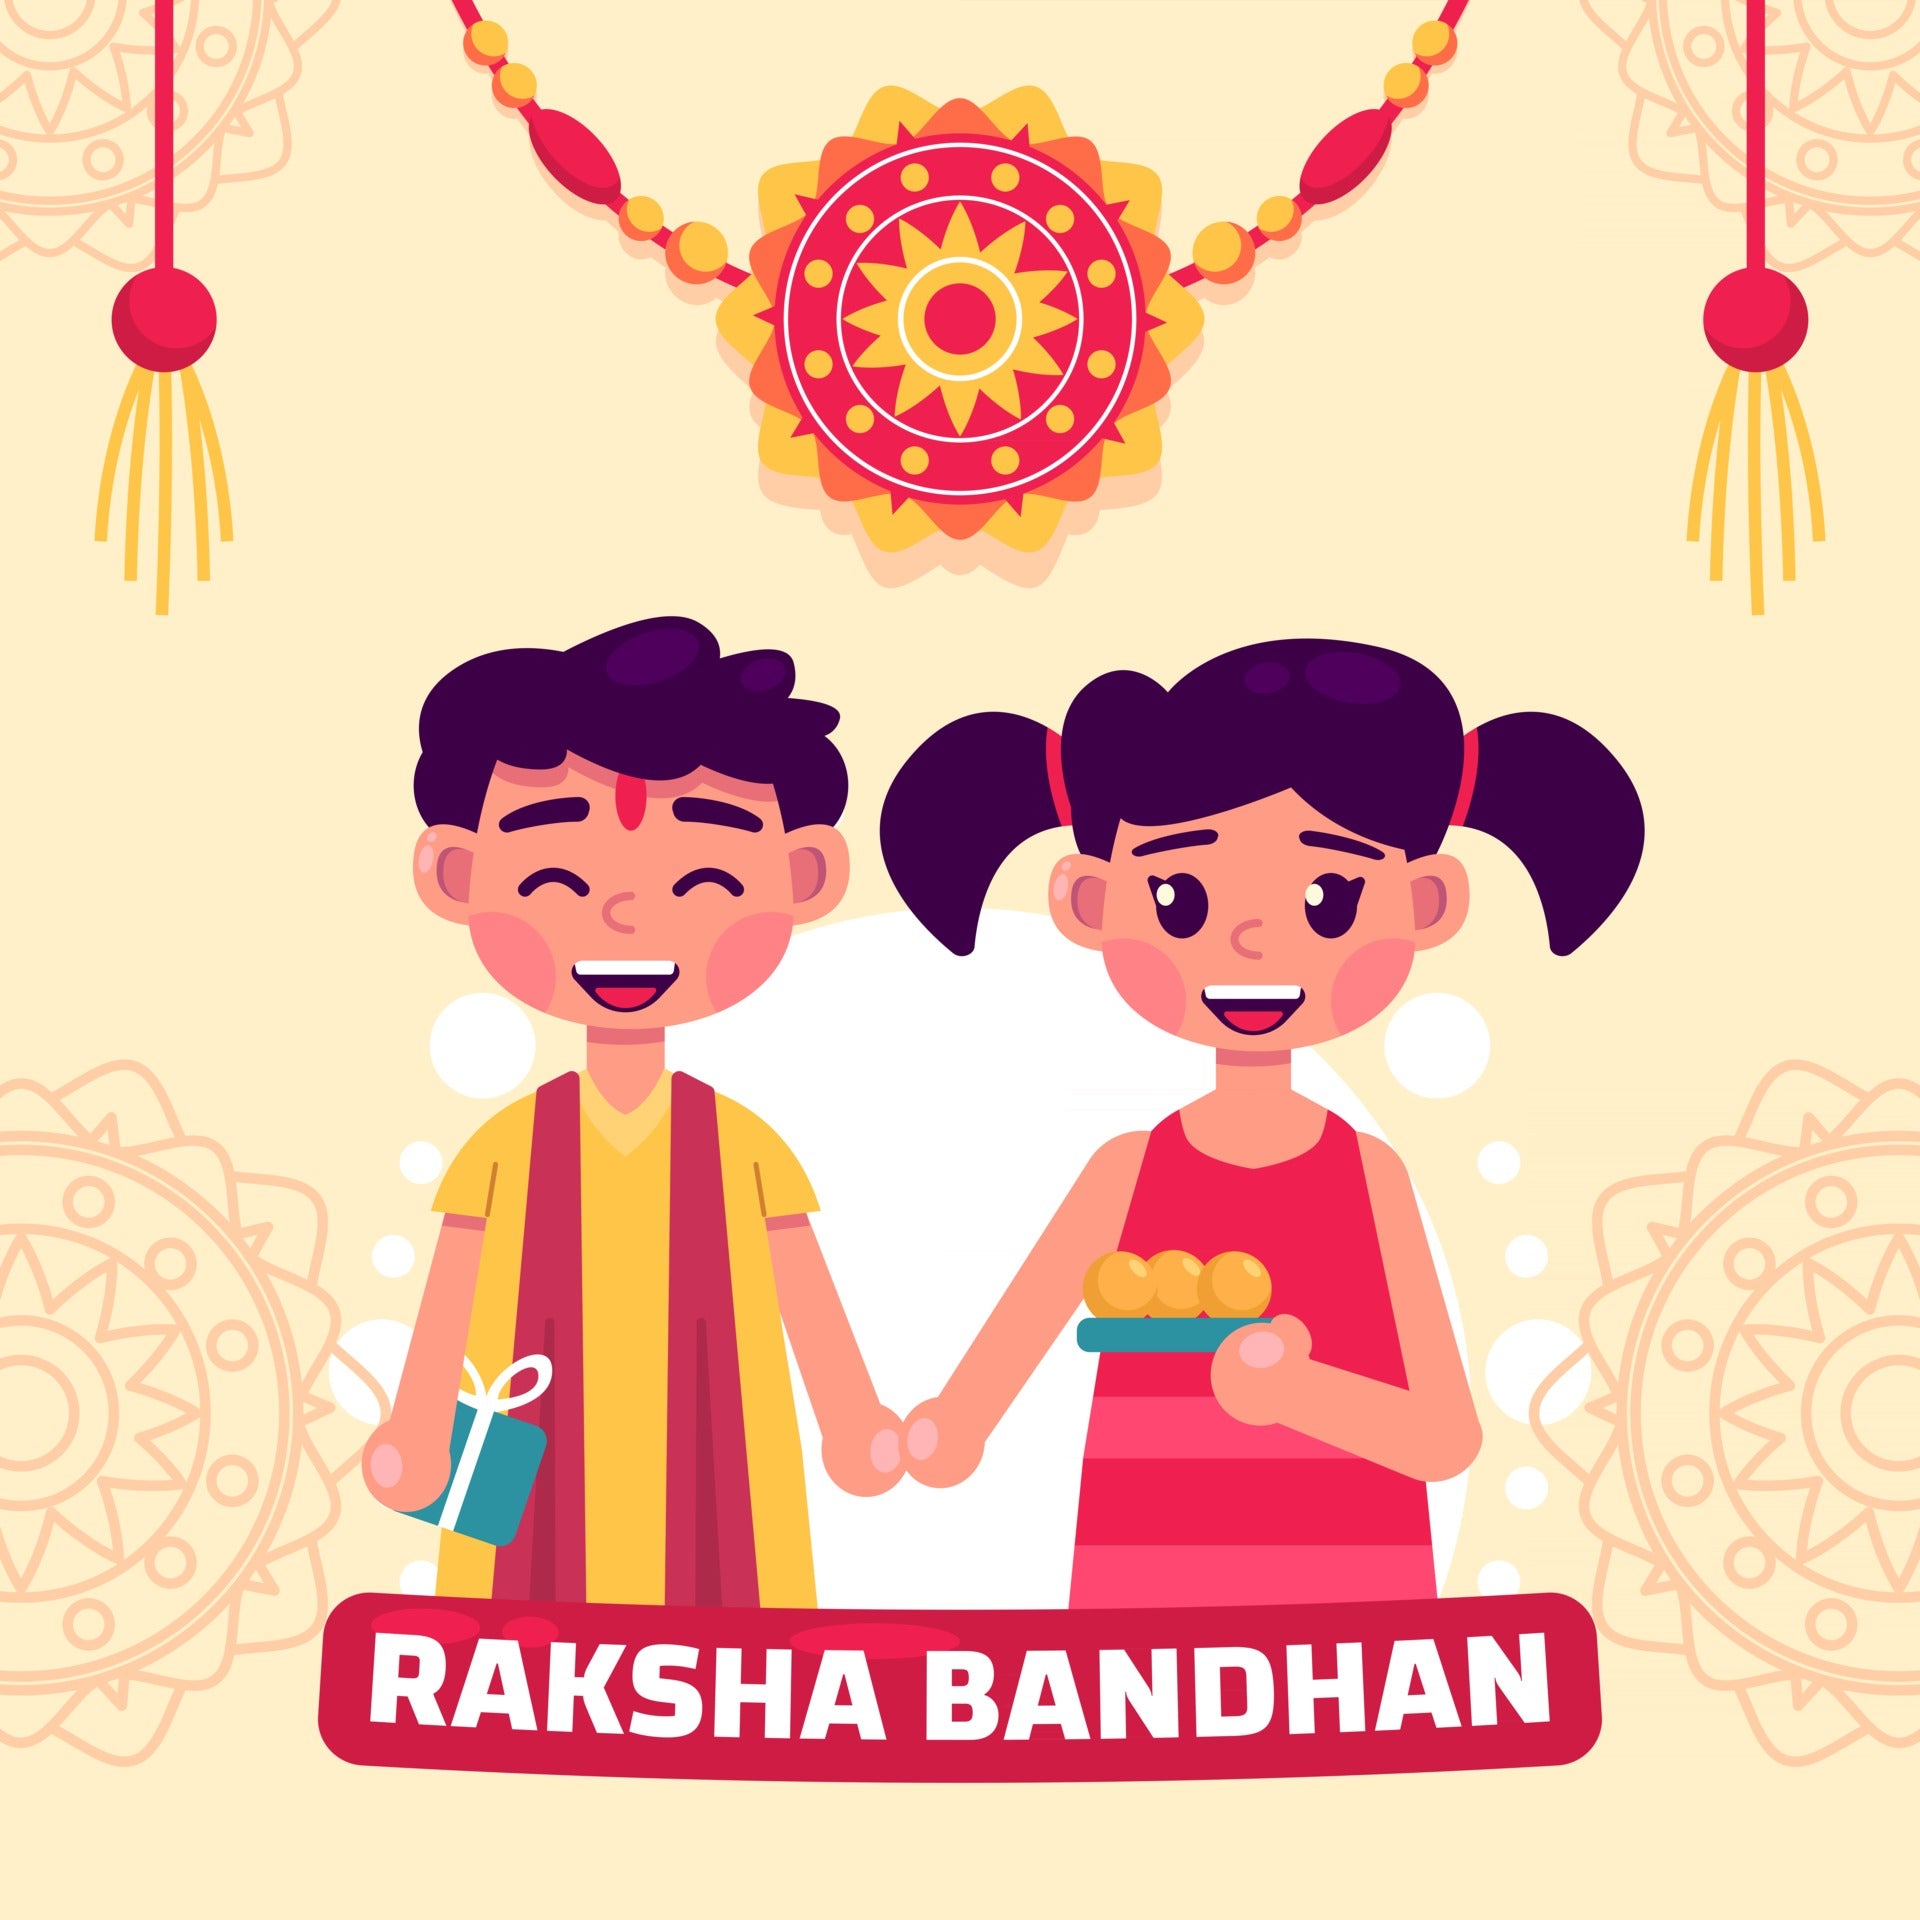 Buy Personalised Rakhi Gifts Online: Fun Gifts for Brothers & Sisters -  woodgeekstore